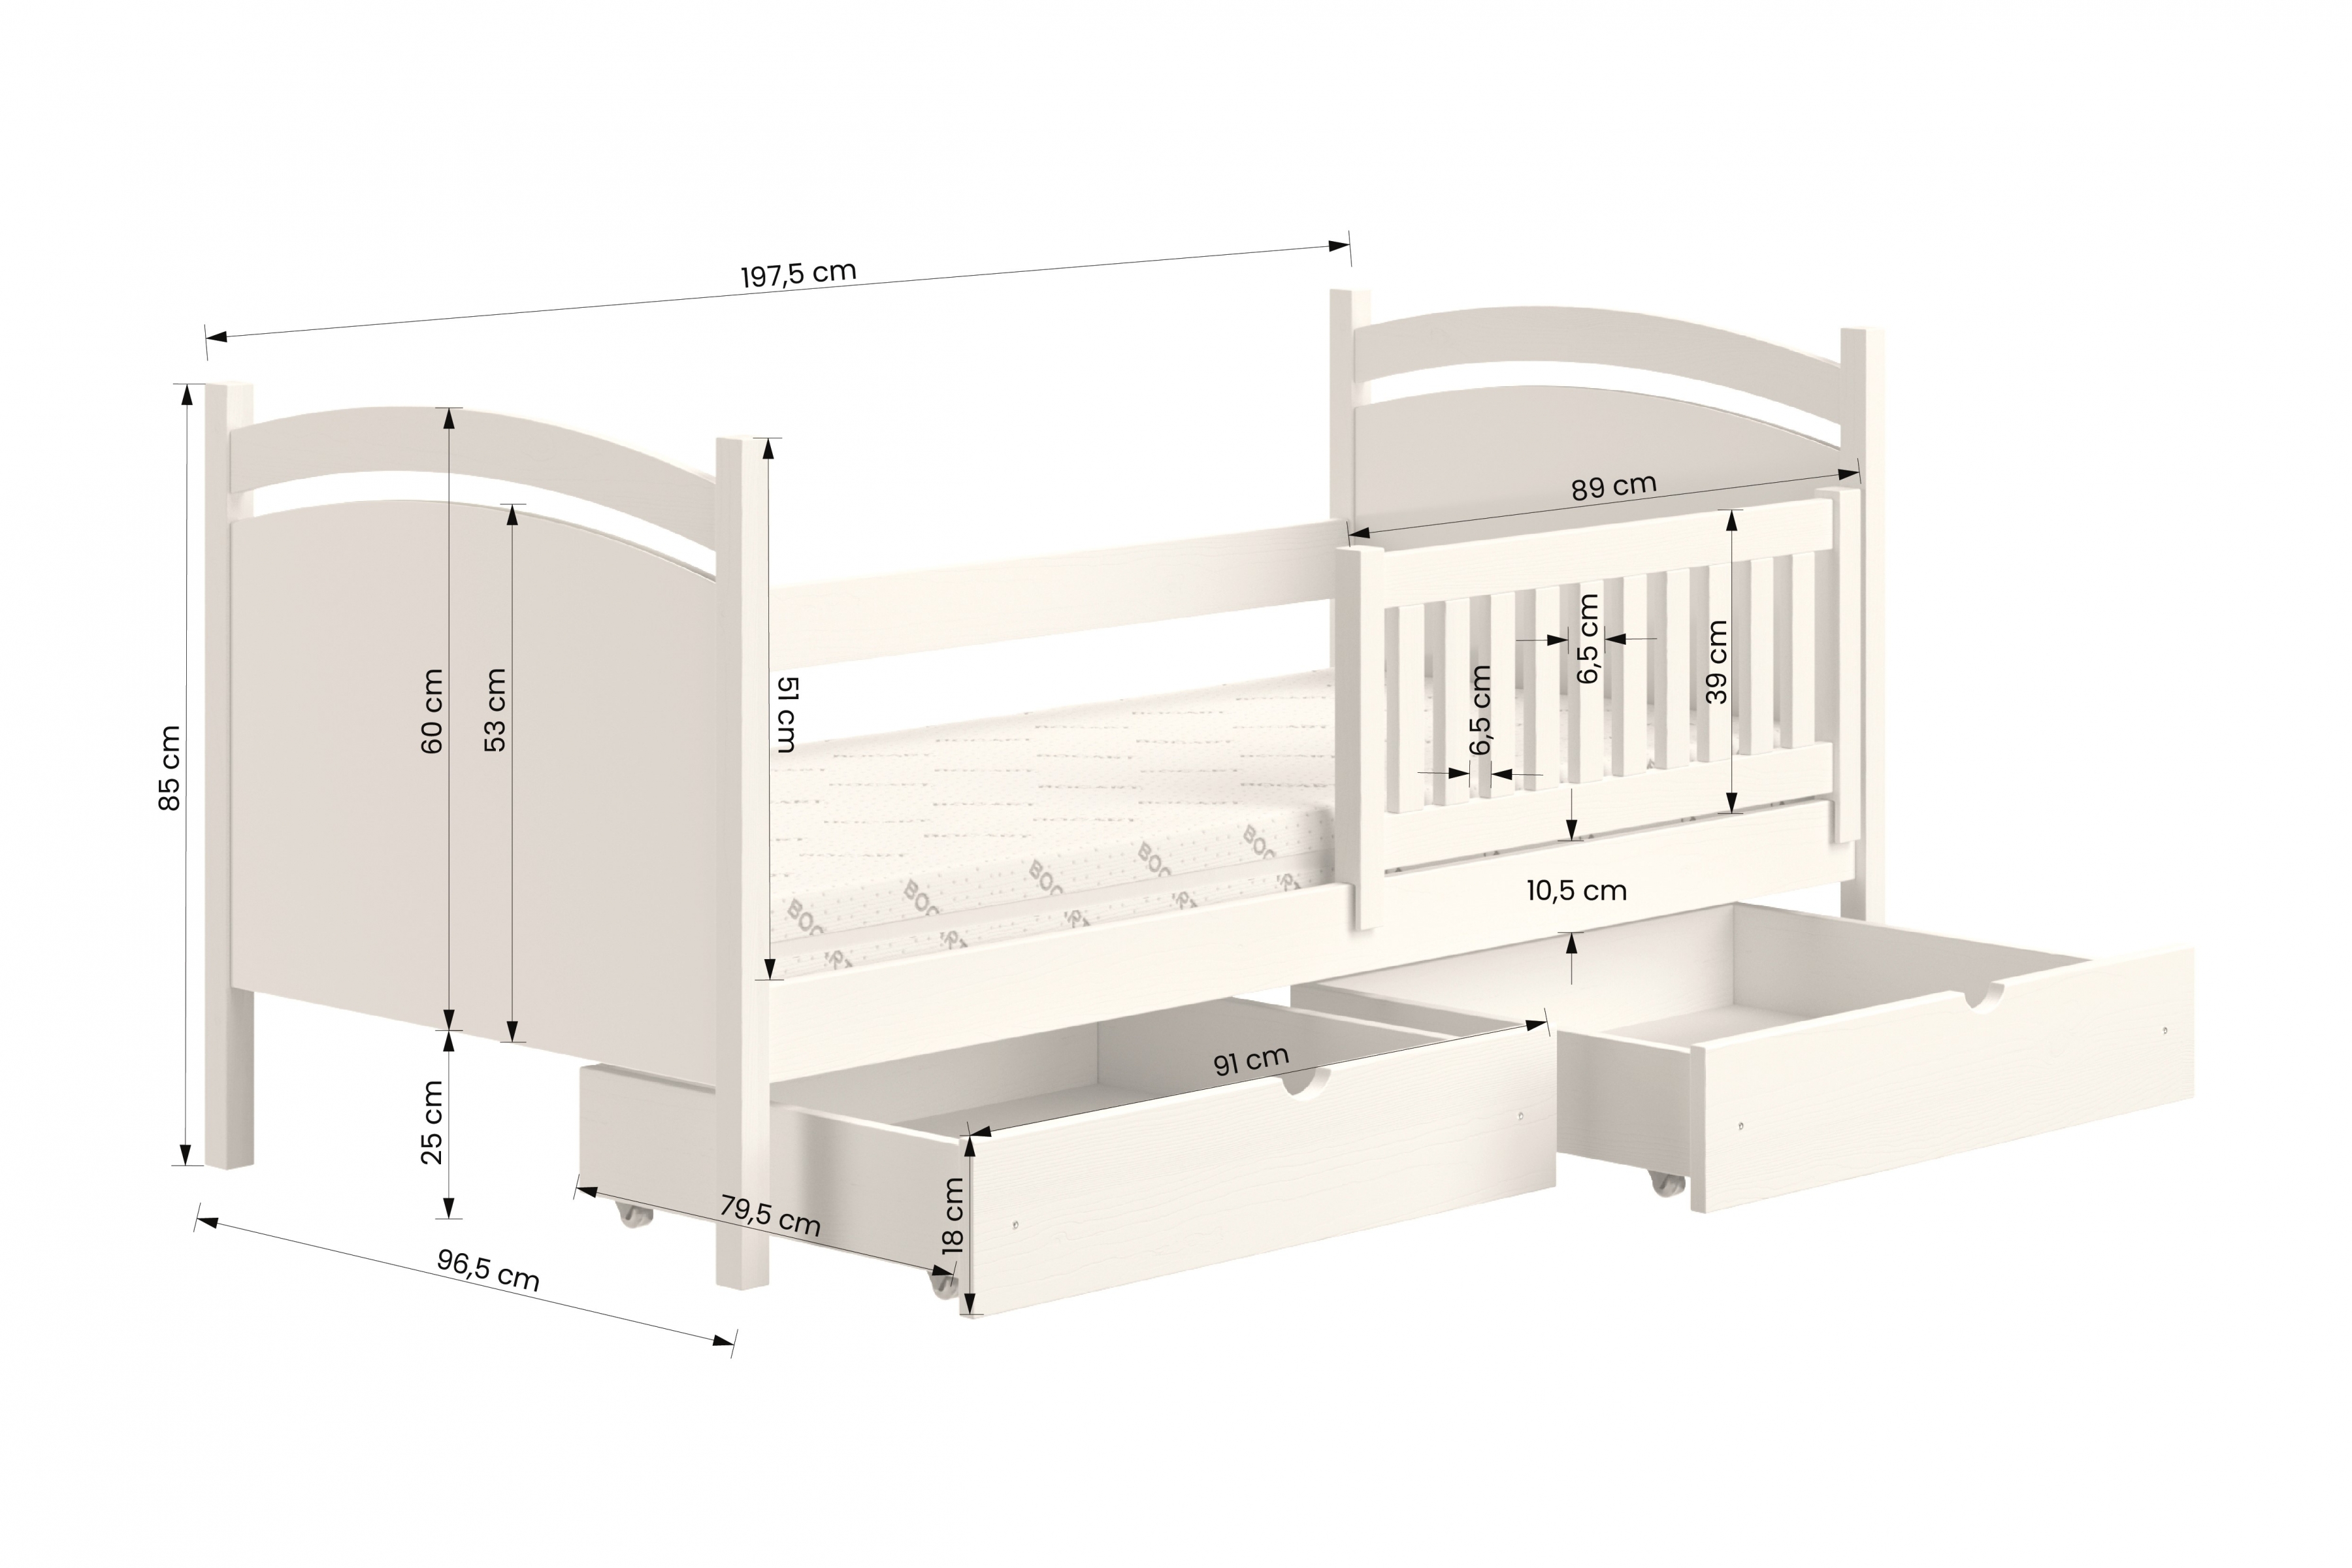 Detská posteľ s tabuľou Amely - Farba šedý, rozmer 90x190 Posteľ dzieciece z tablica suchoscieralna Amely - Rozmery